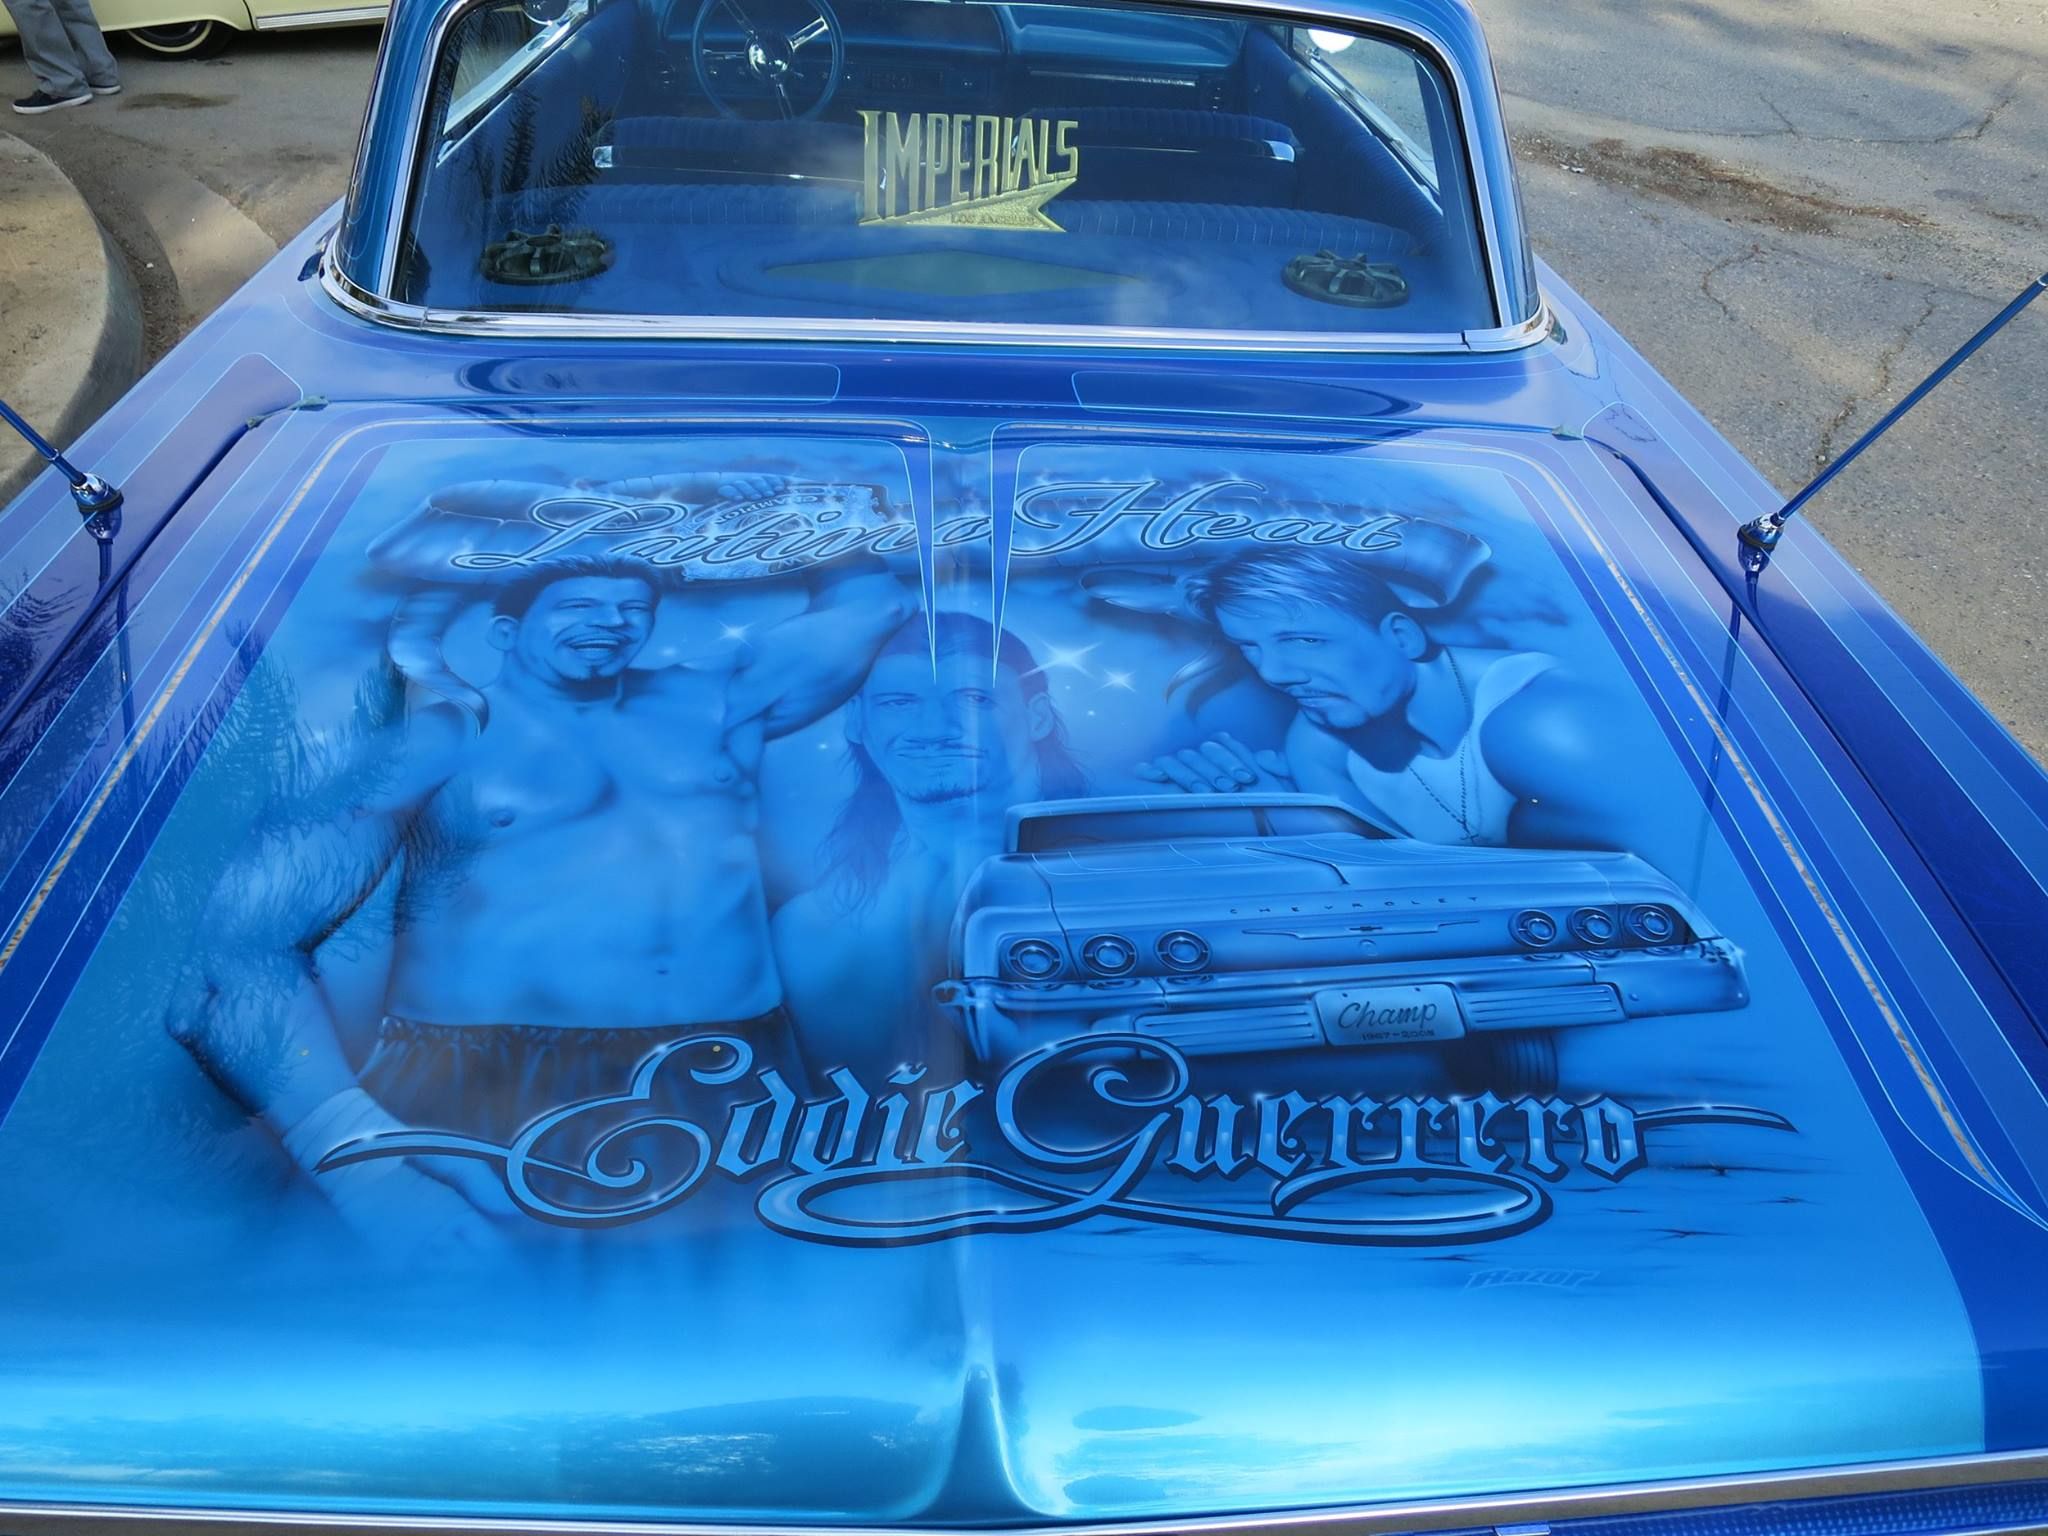 Dave Bautista (Batista) Honors Eddie Guerrero in his 1964 Chevy Impala